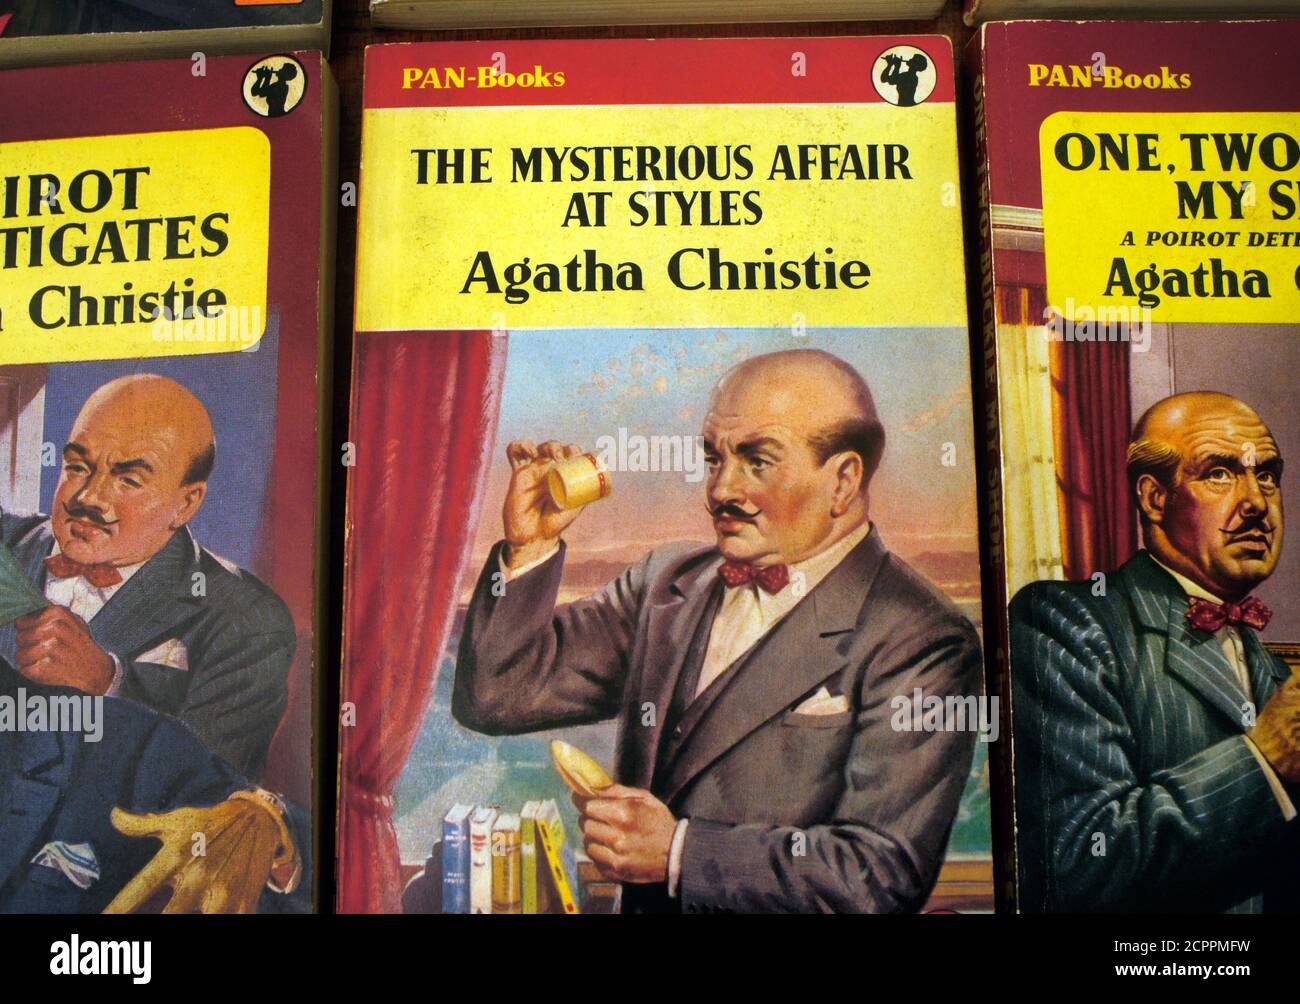 Les livres de poche Agatha Christie d'occasion. Livres de la casserole des années 50 couvertures mettant en vedette.Poirot. L'histoire mystérieuse de Styles. 100e anniversaire 2020.. Banque D'Images